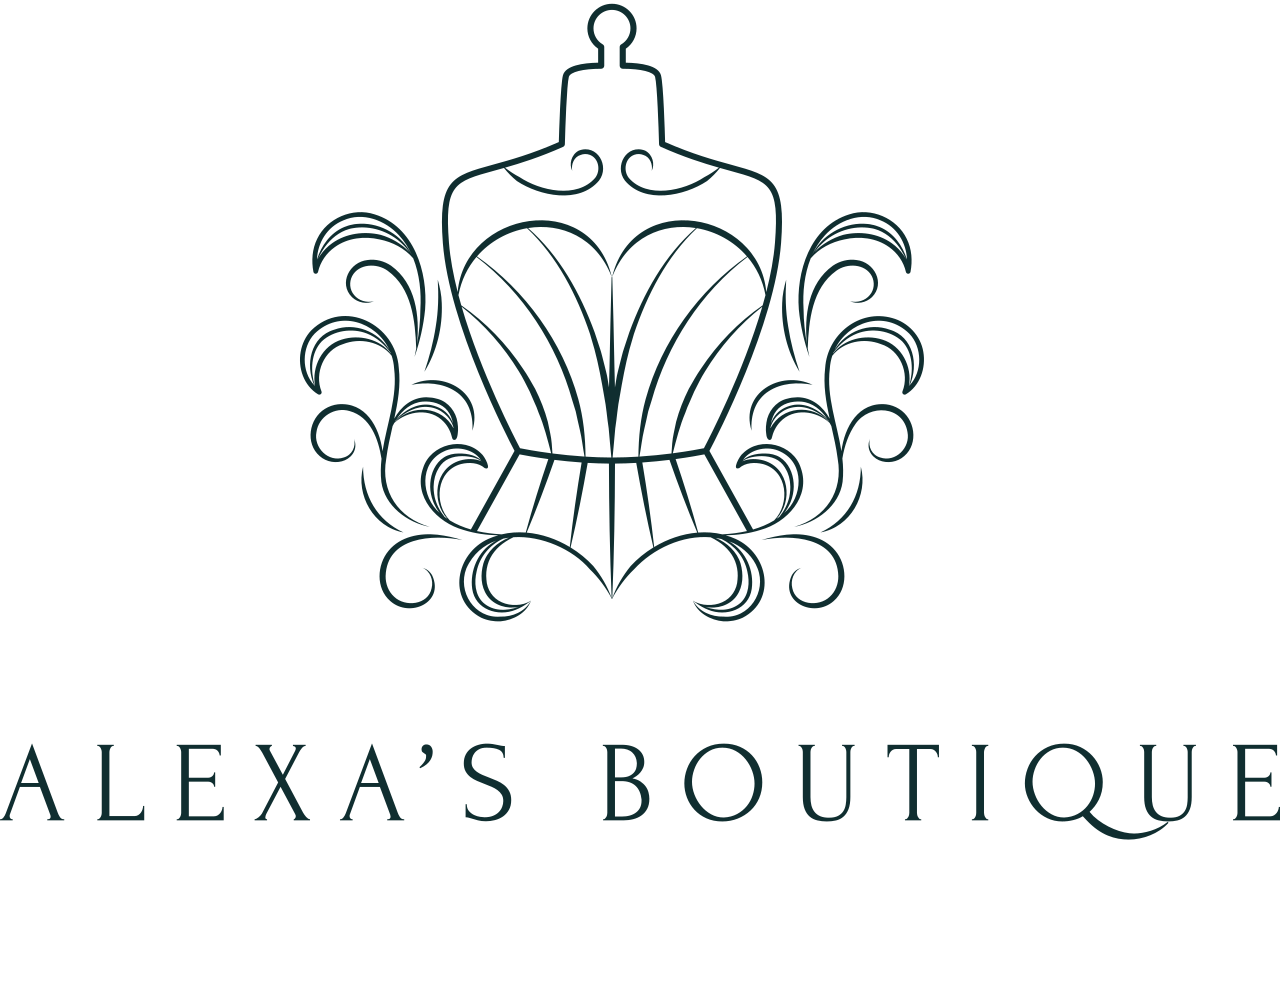 Alexa’s Boutique 's logo